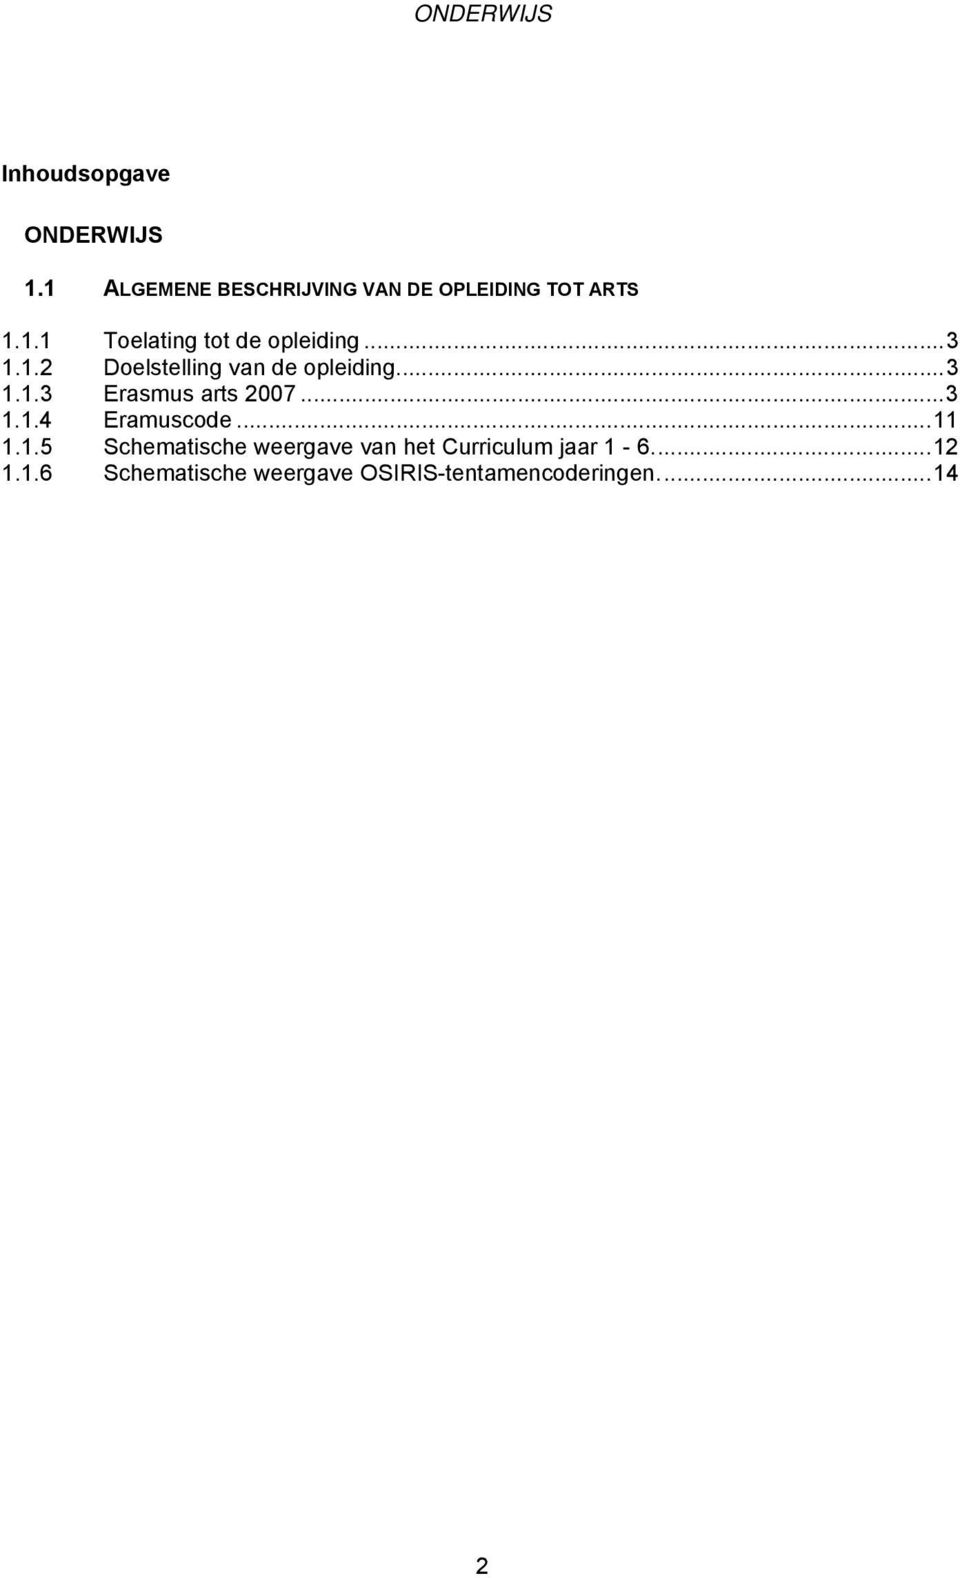 ..11 1.1.5 Schematische weergave van het Curriculum jaar 1-6...12 1.1.6 Schematische weergave OSIRIS-tentamencoderingen.